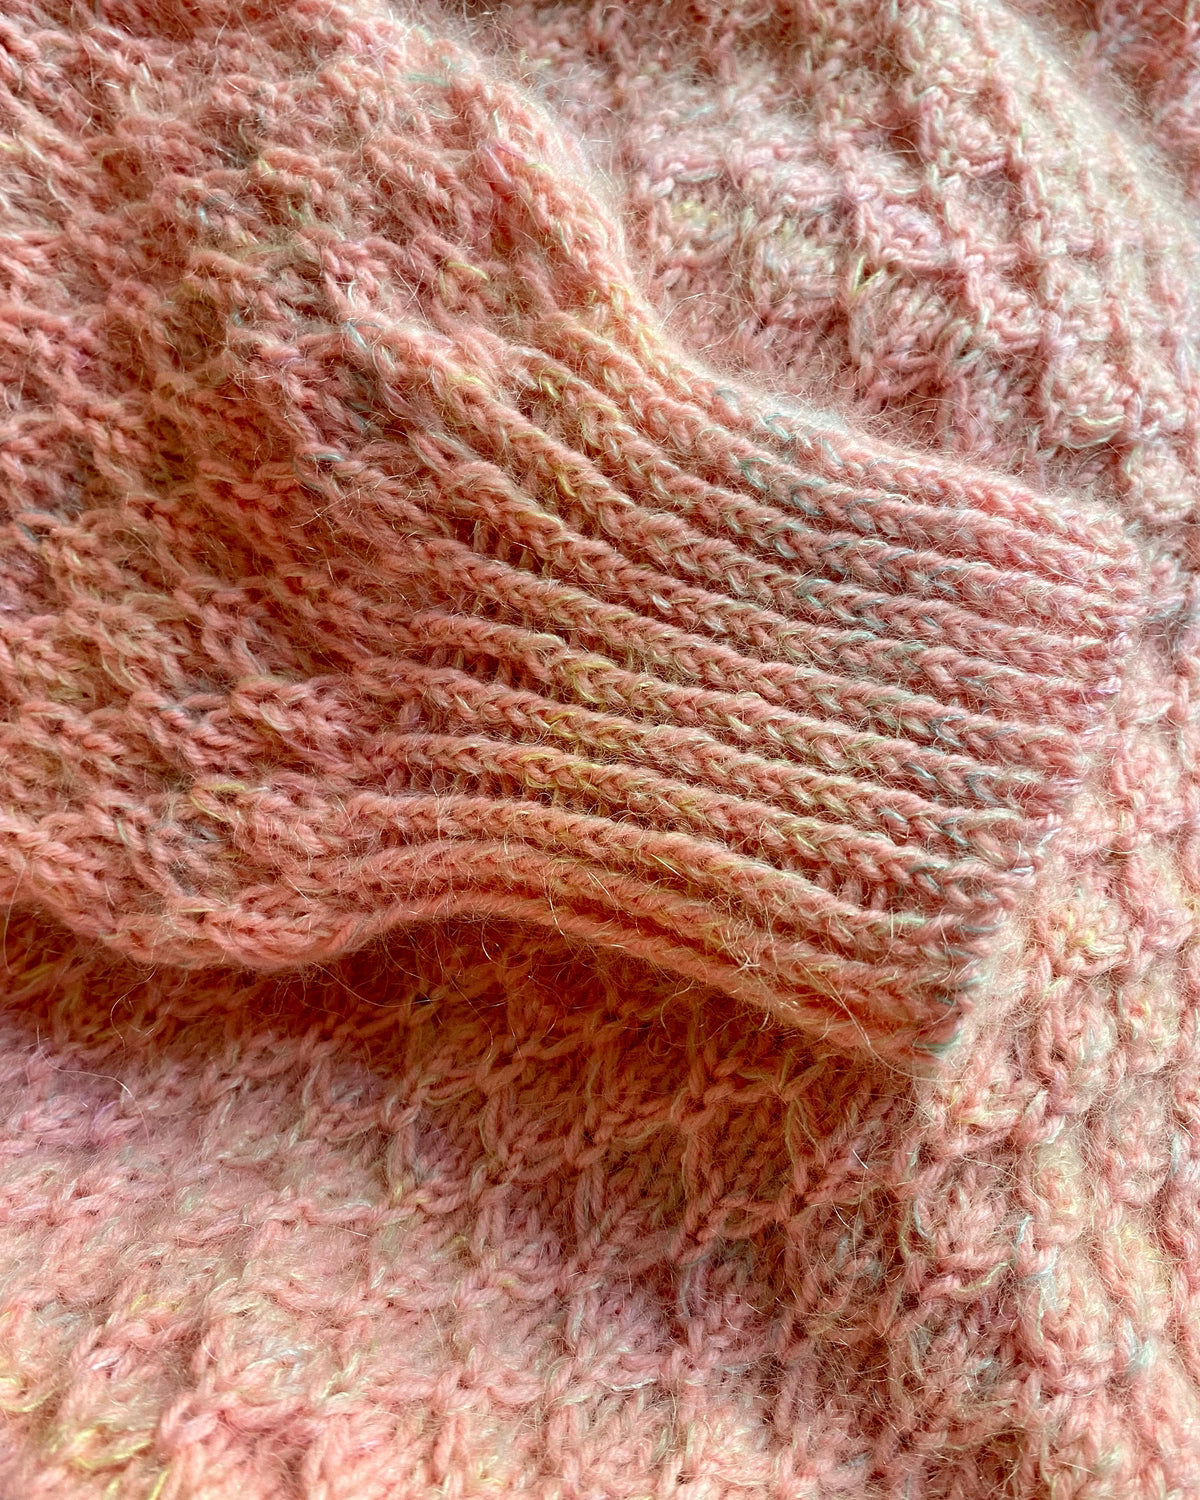 Formation Sweater Deutsch Popknit strikkeopskrift 